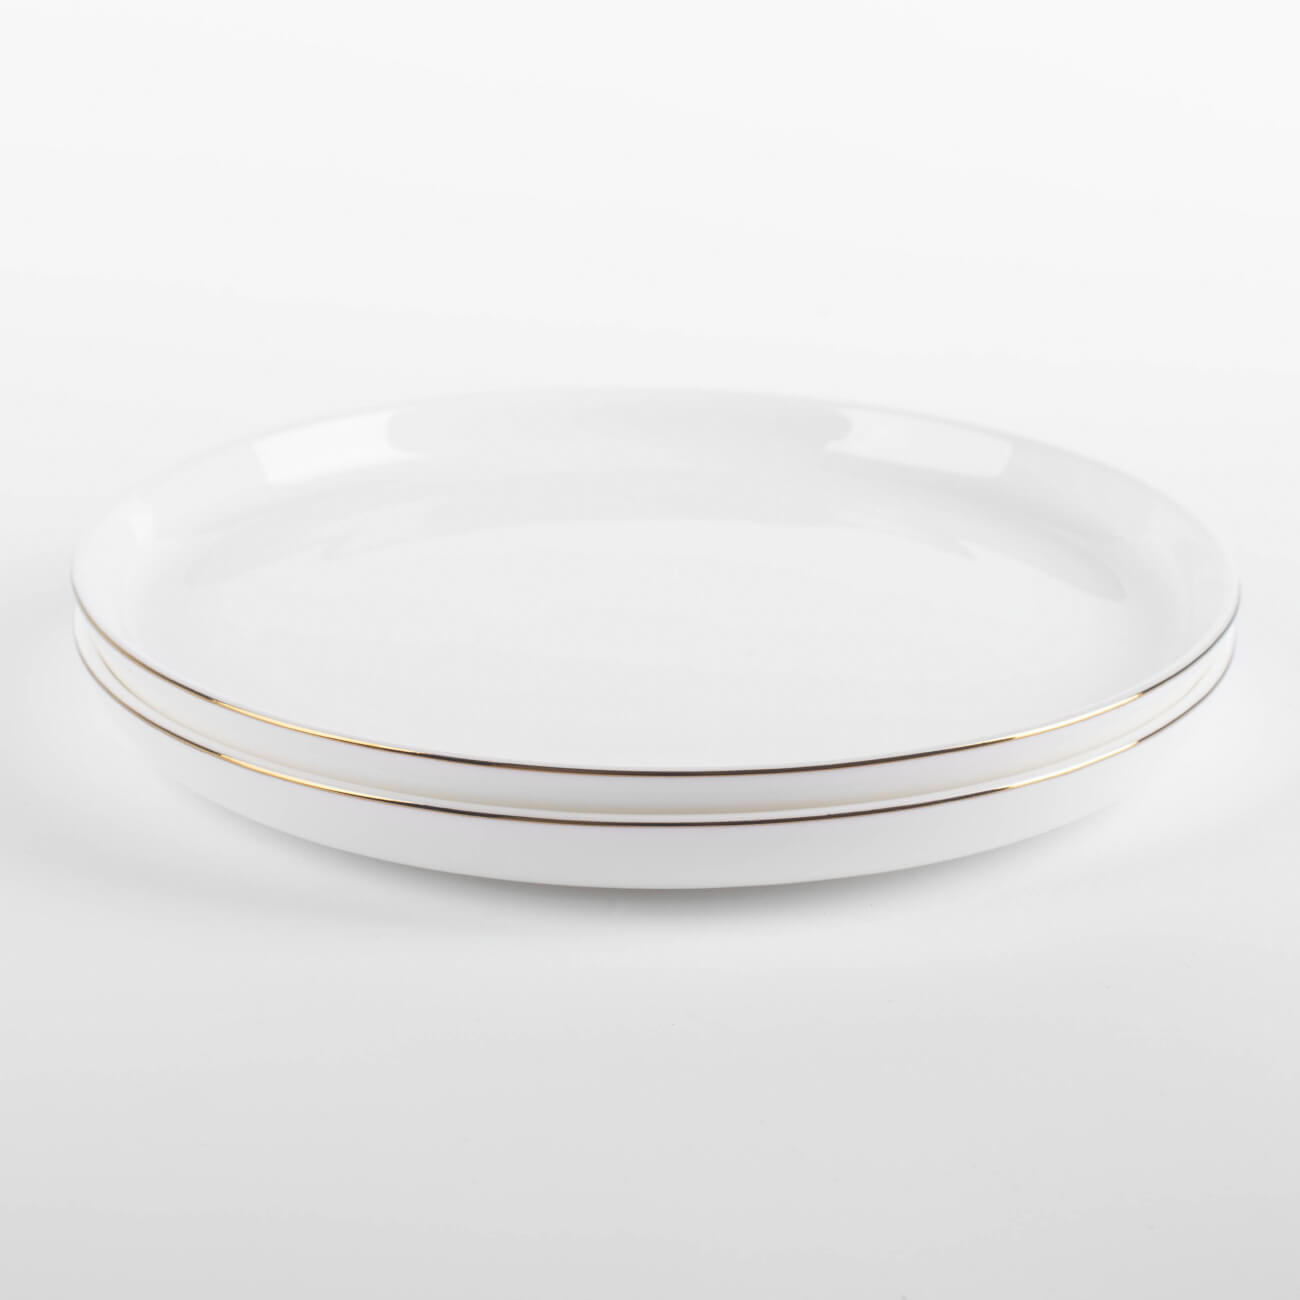 Тарелка десертная, 20 см, 2 шт, фарфор F, белая, Ideal gold изображение № 1